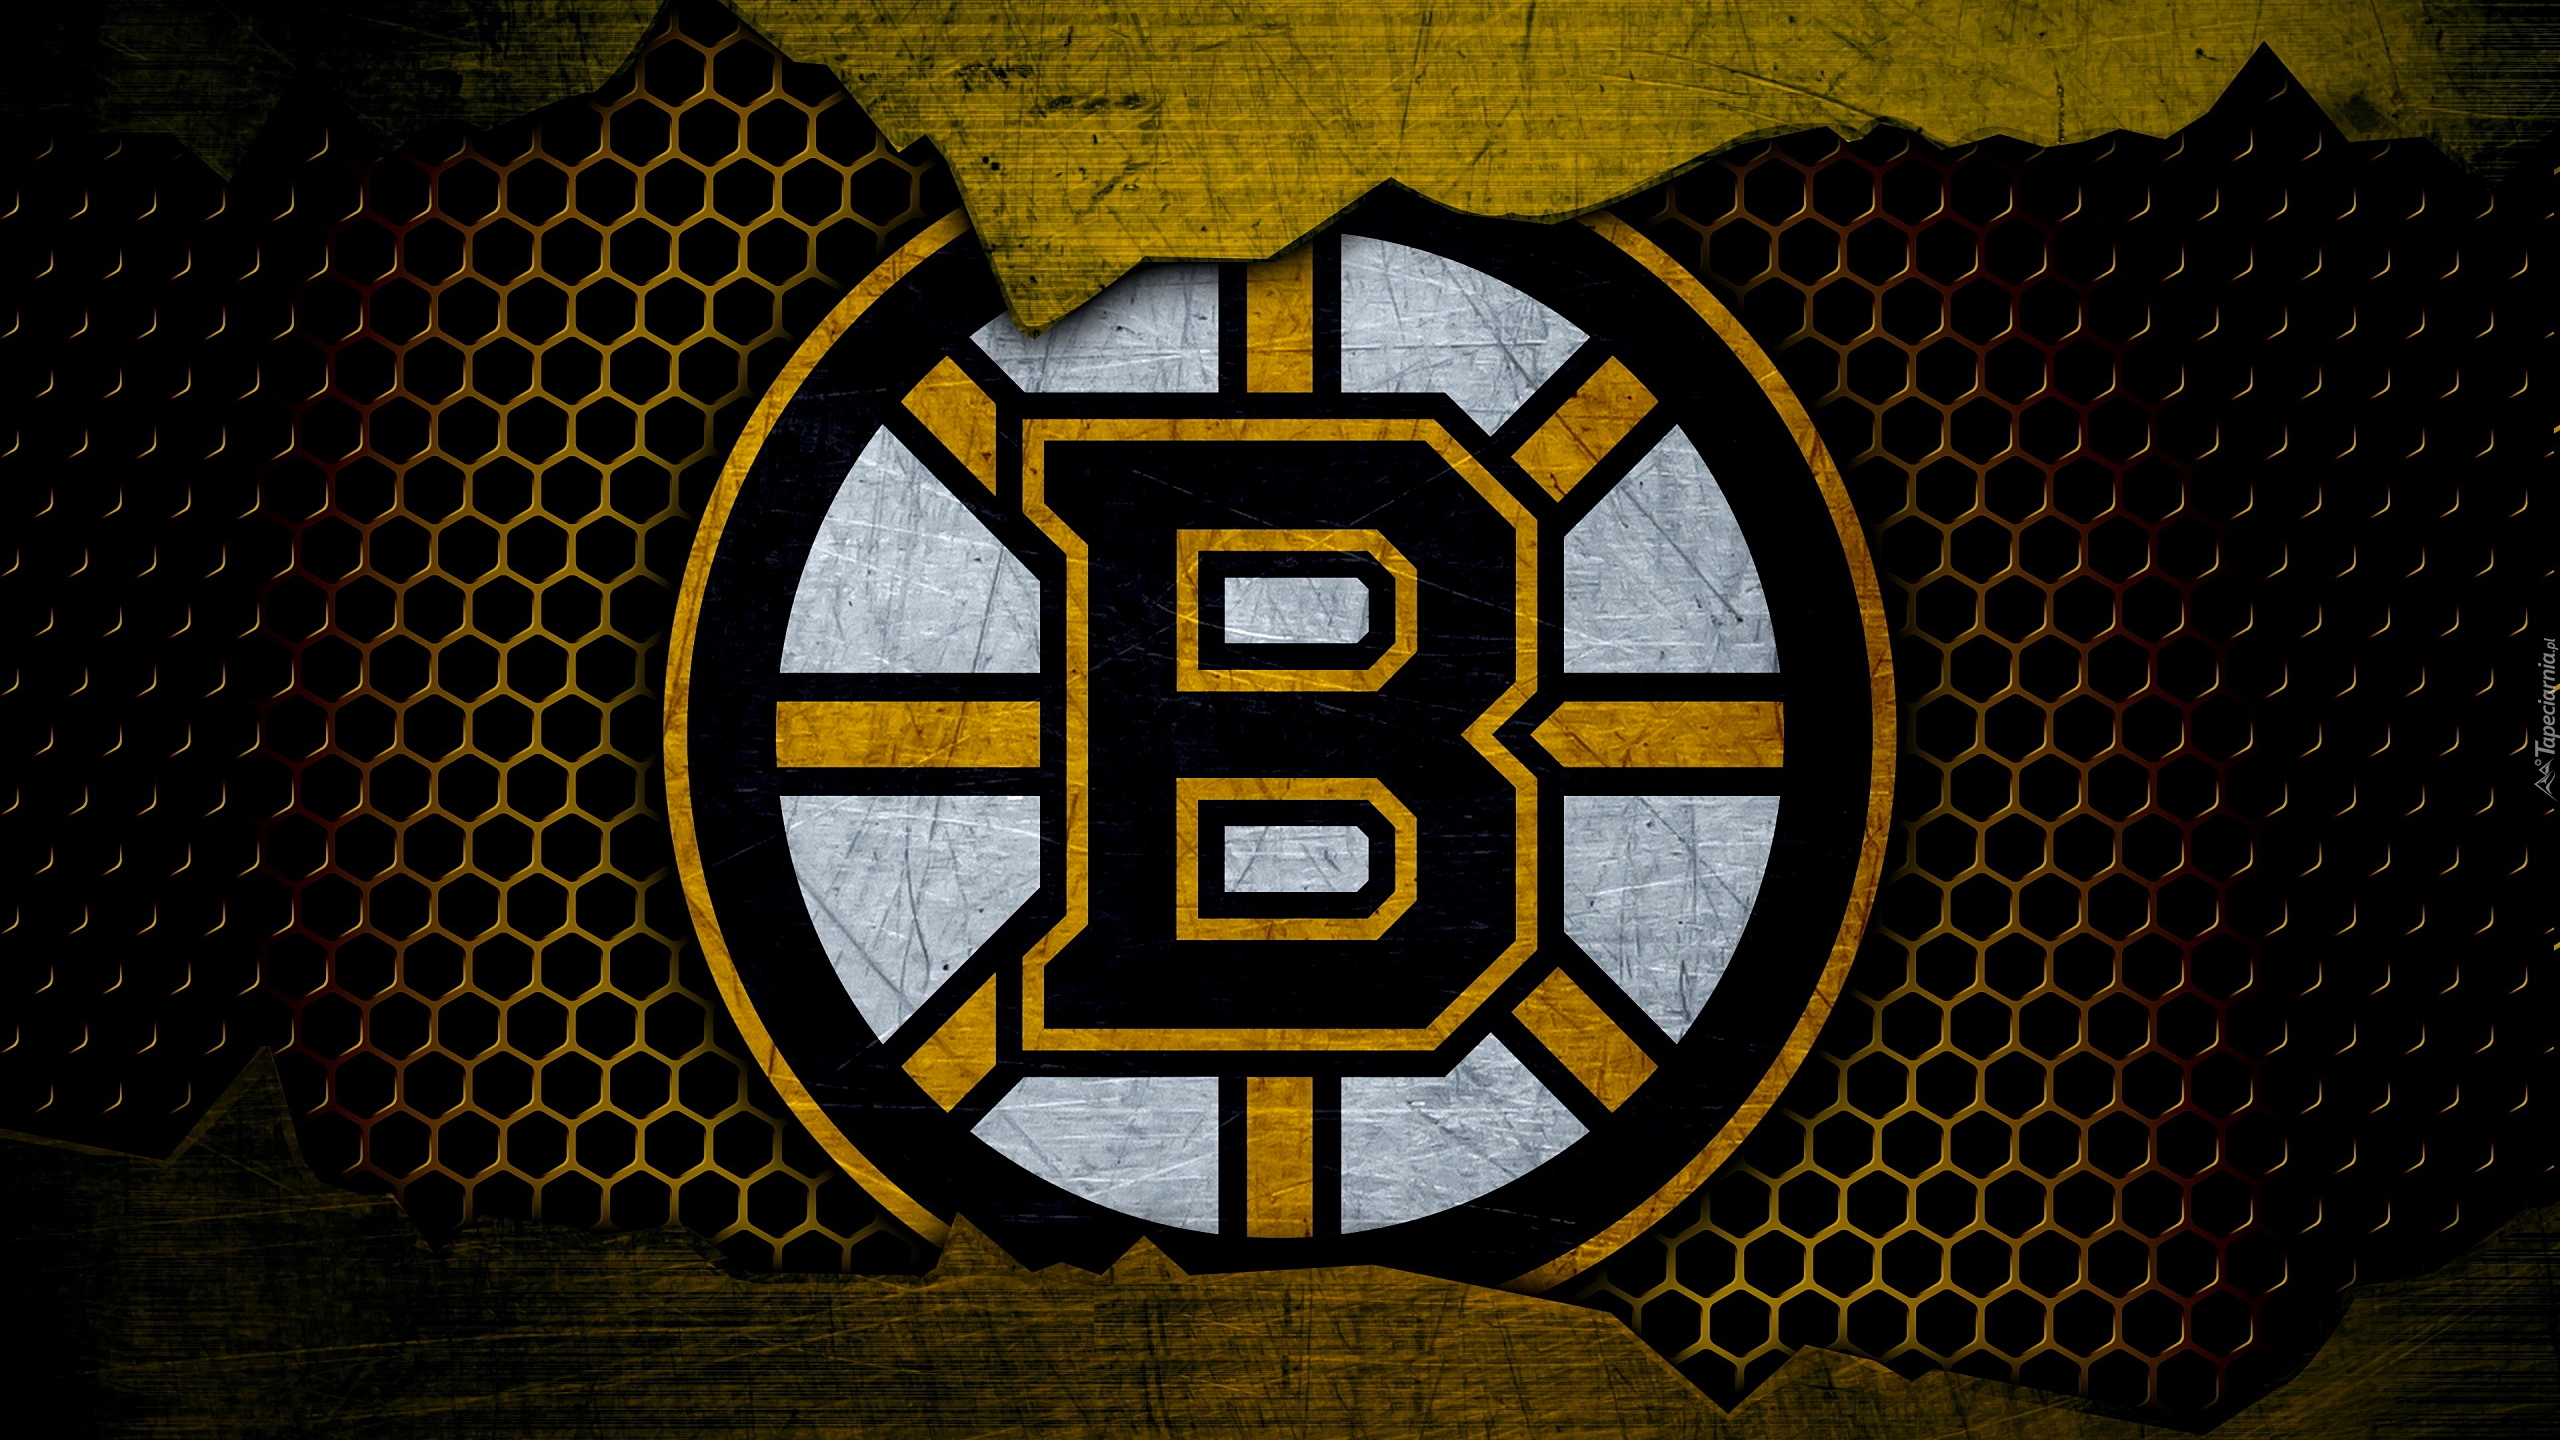 Logo, Klub hokejowy, Boston Bruins